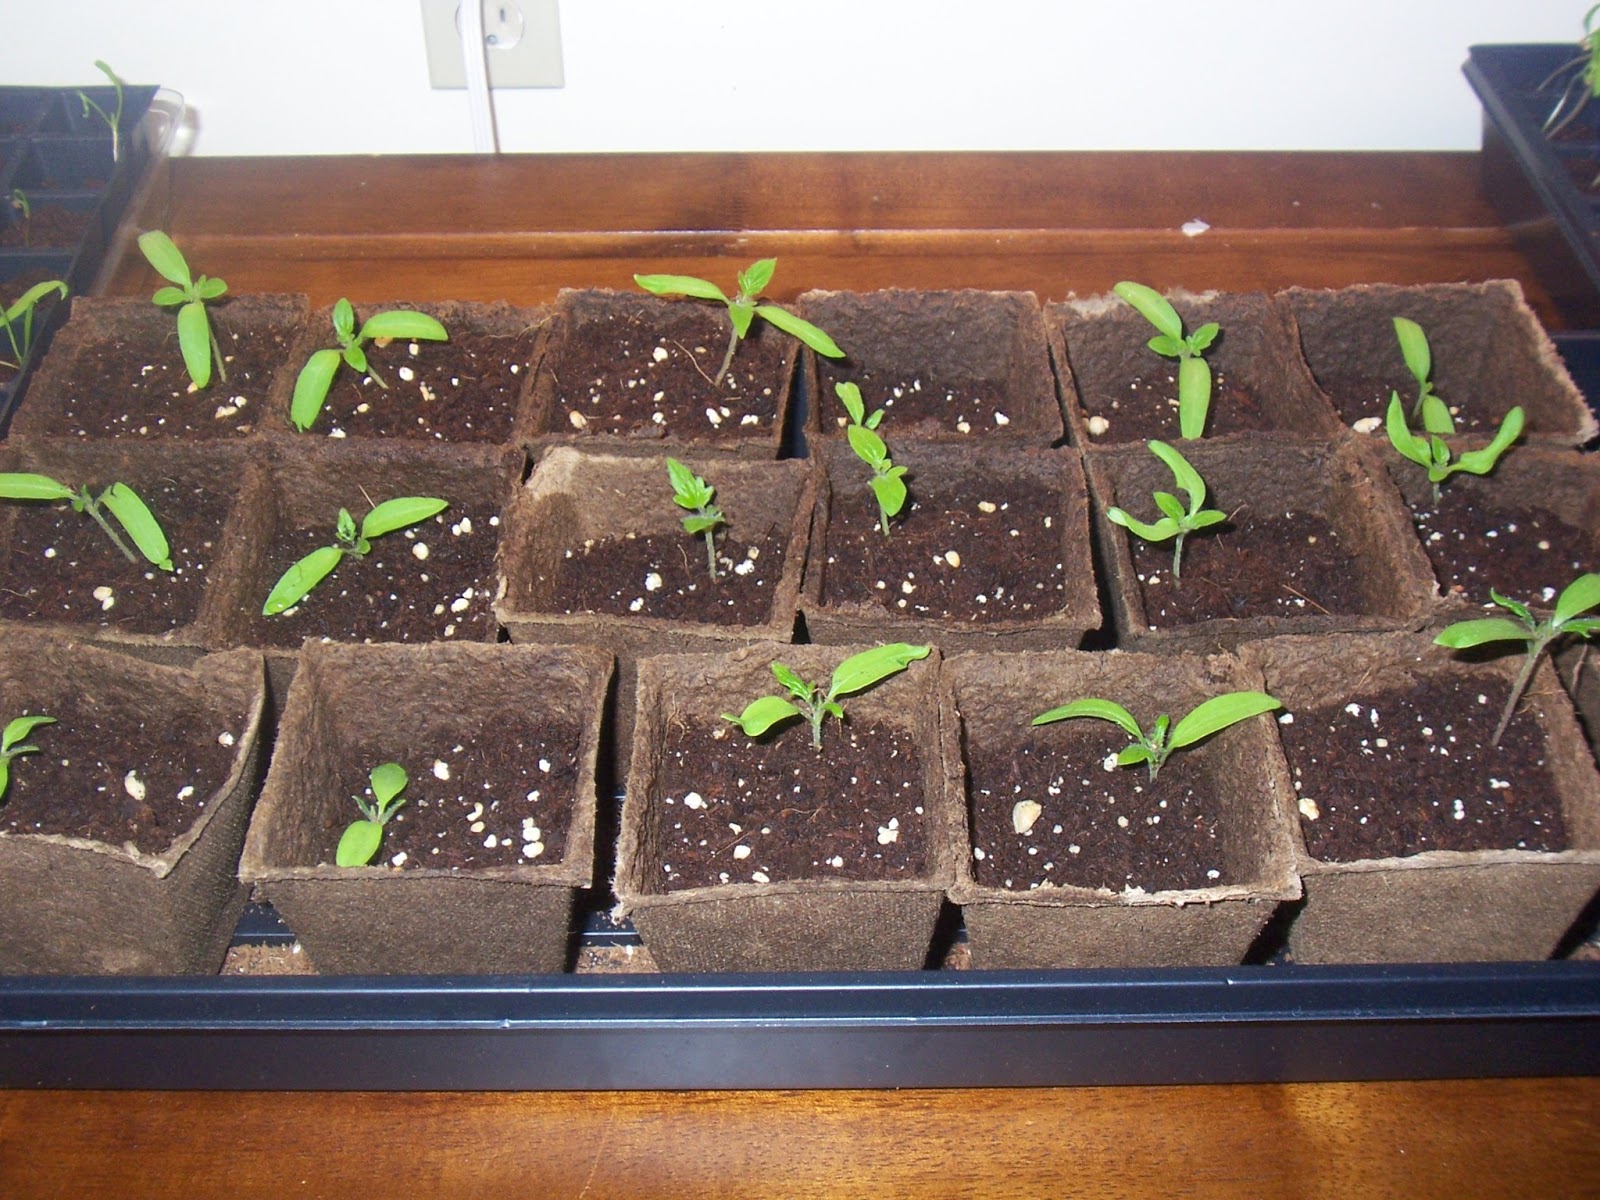 transplant seedlings